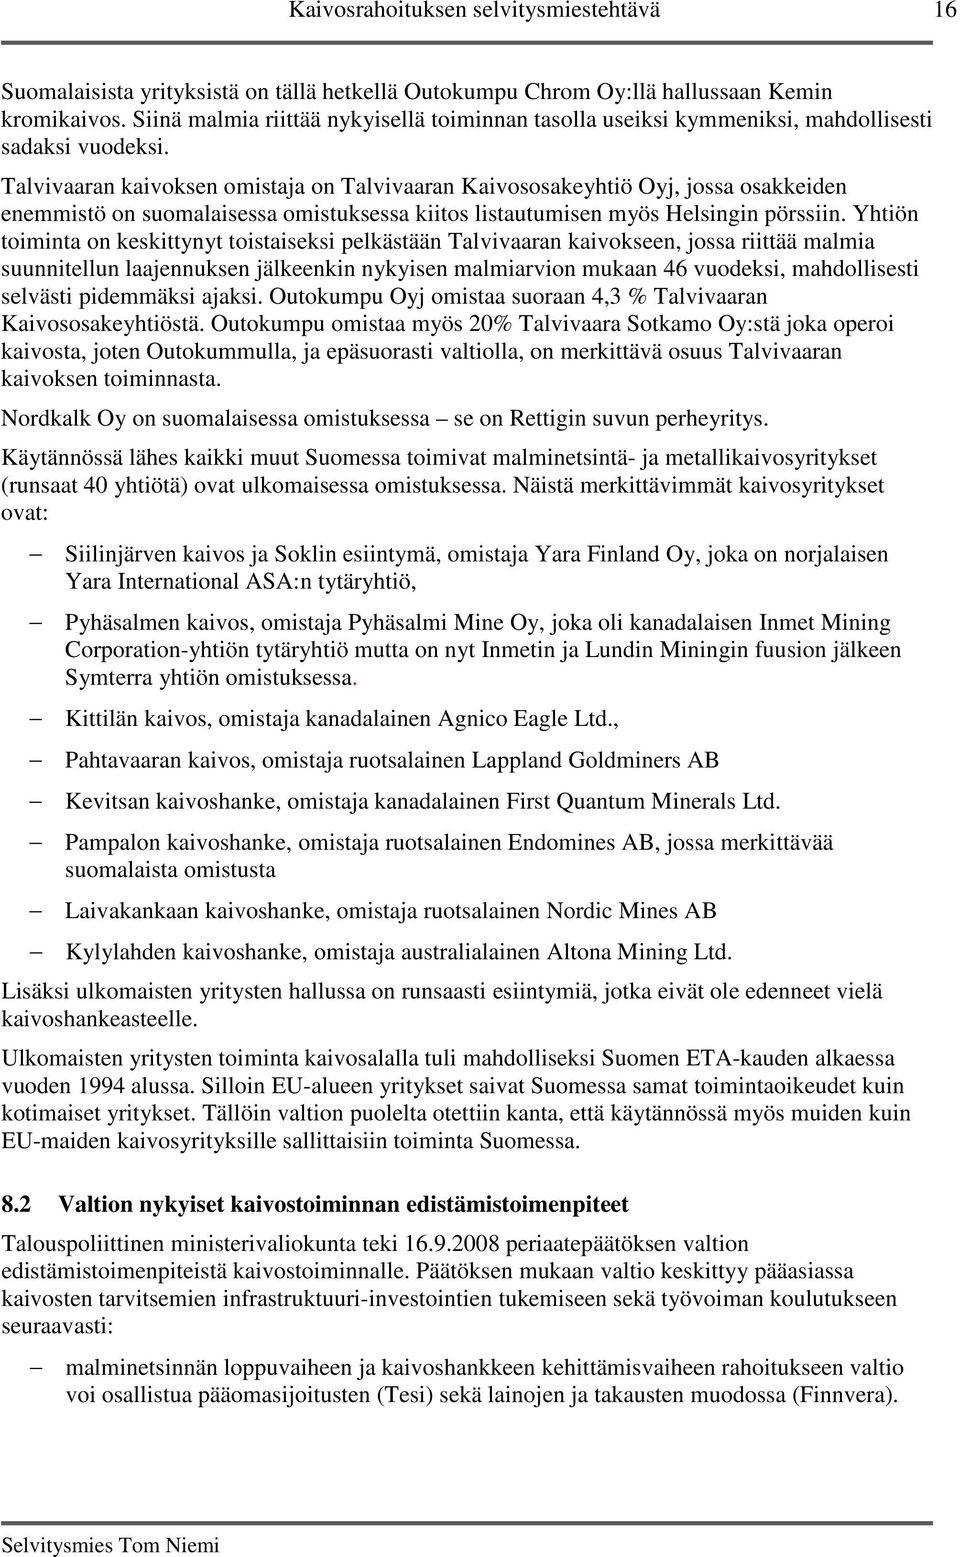 Talvivaaran kaivoksen omistaja on Talvivaaran Kaivososakeyhtiö Oyj, jossa osakkeiden enemmistö on suomalaisessa omistuksessa kiitos listautumisen myös Helsingin pörssiin.